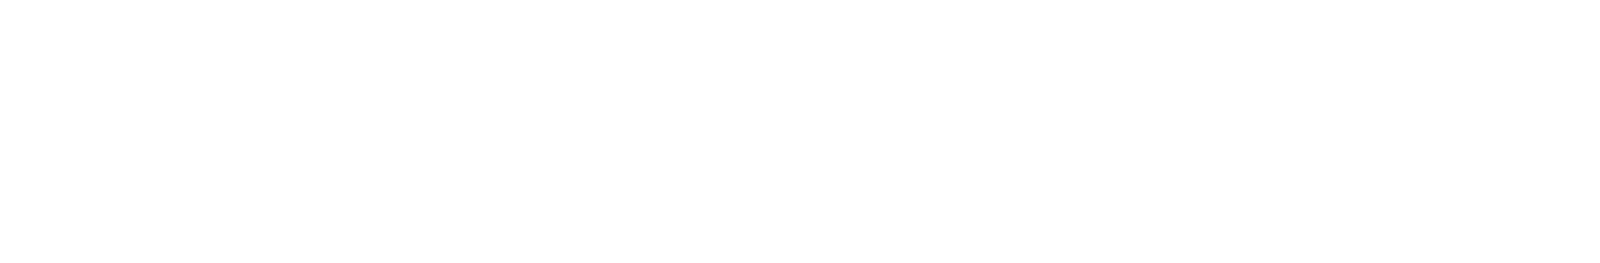 Stack Host Logo